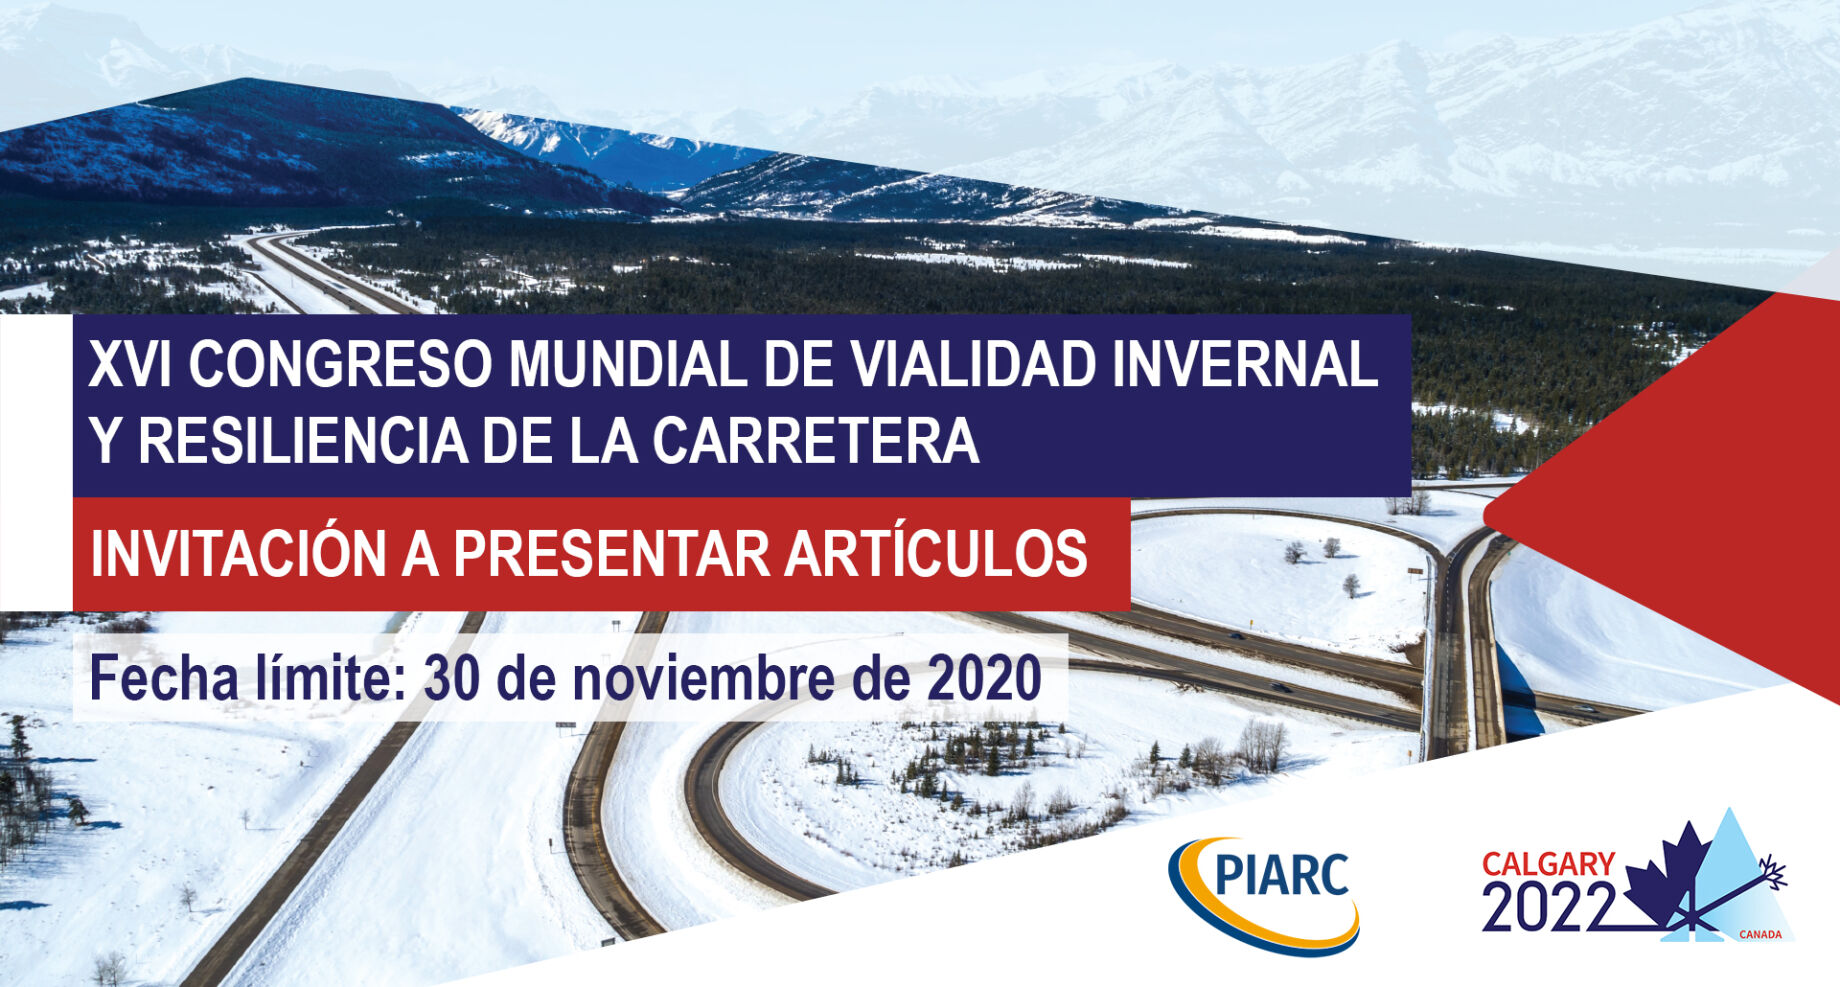 ¡Envíe su resumen antes del 30 de noviembre de 2020 y contribuya al próximo Congreso Mundial de
Vialidad Invernal y Resiliencia de la Carretera!